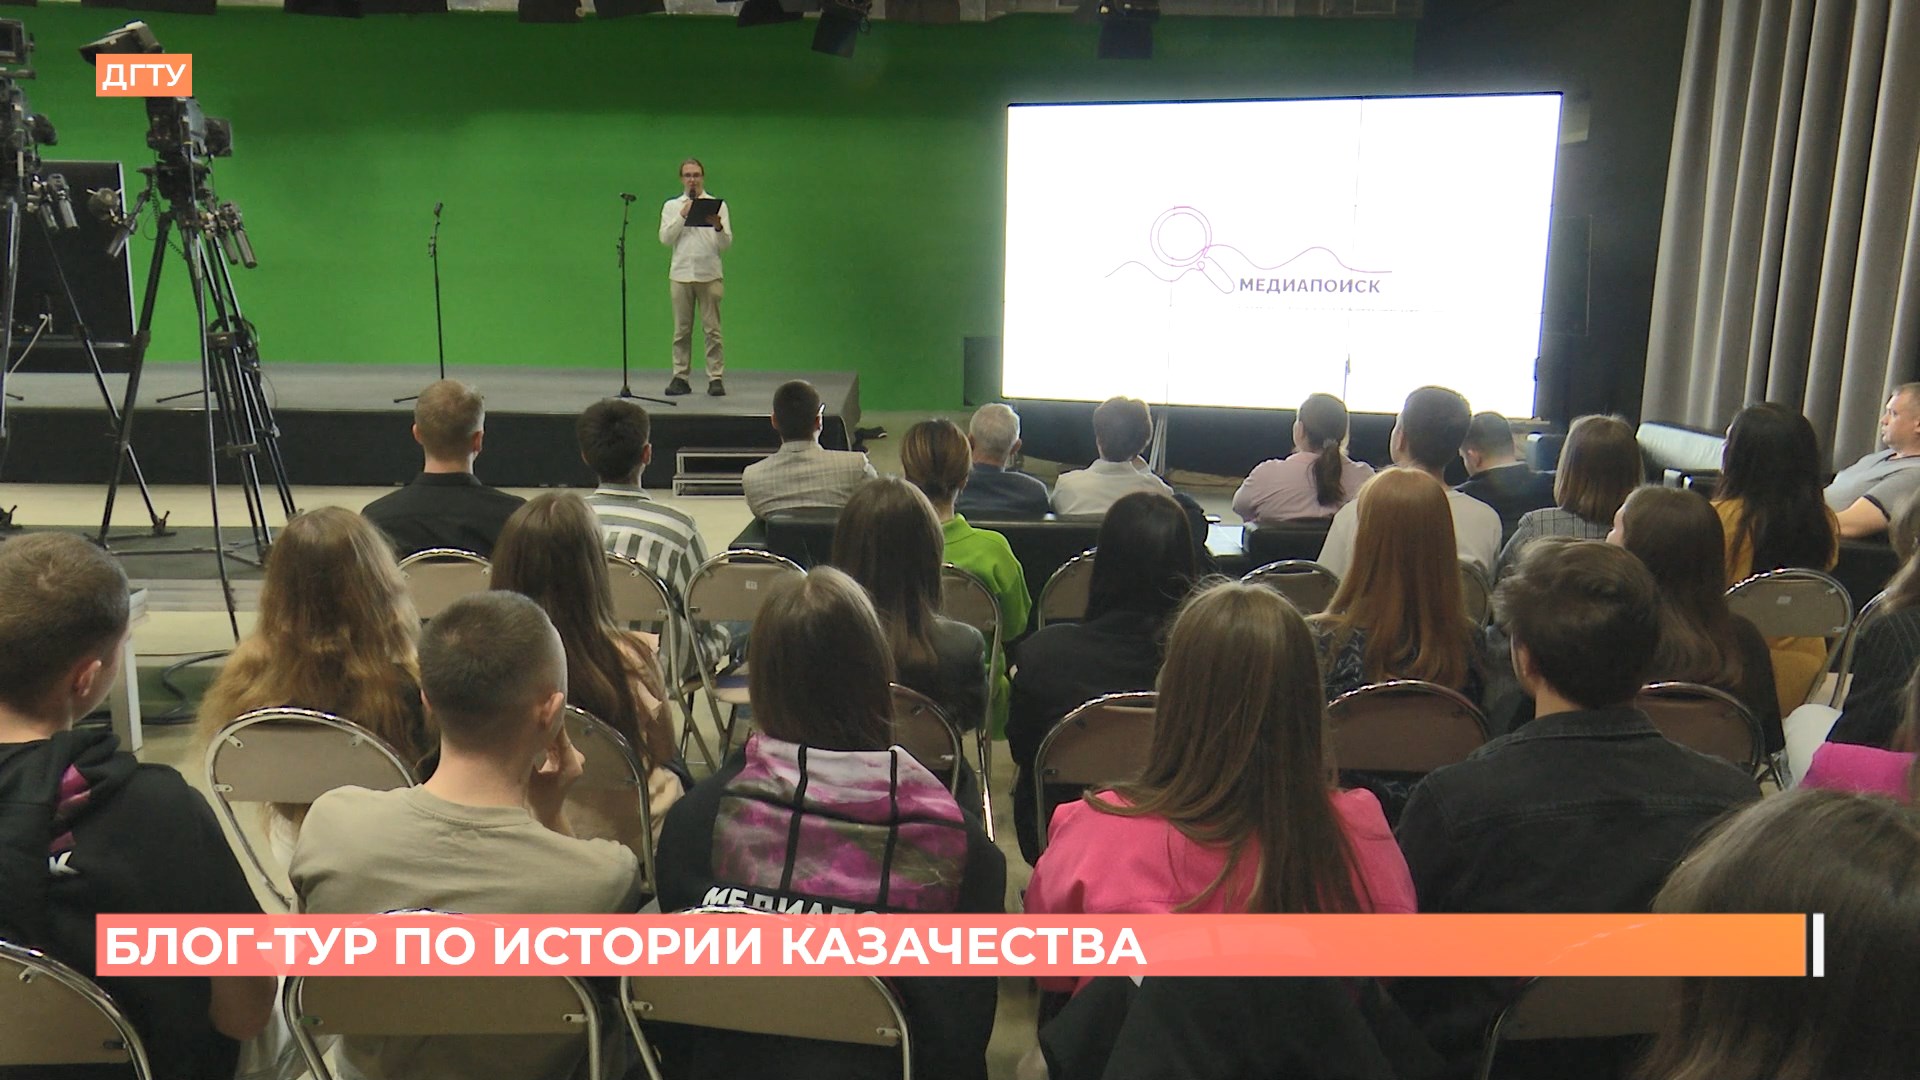 5 регионов вошли в маршрут блог-тура по следам казачества «Медиапоиск»